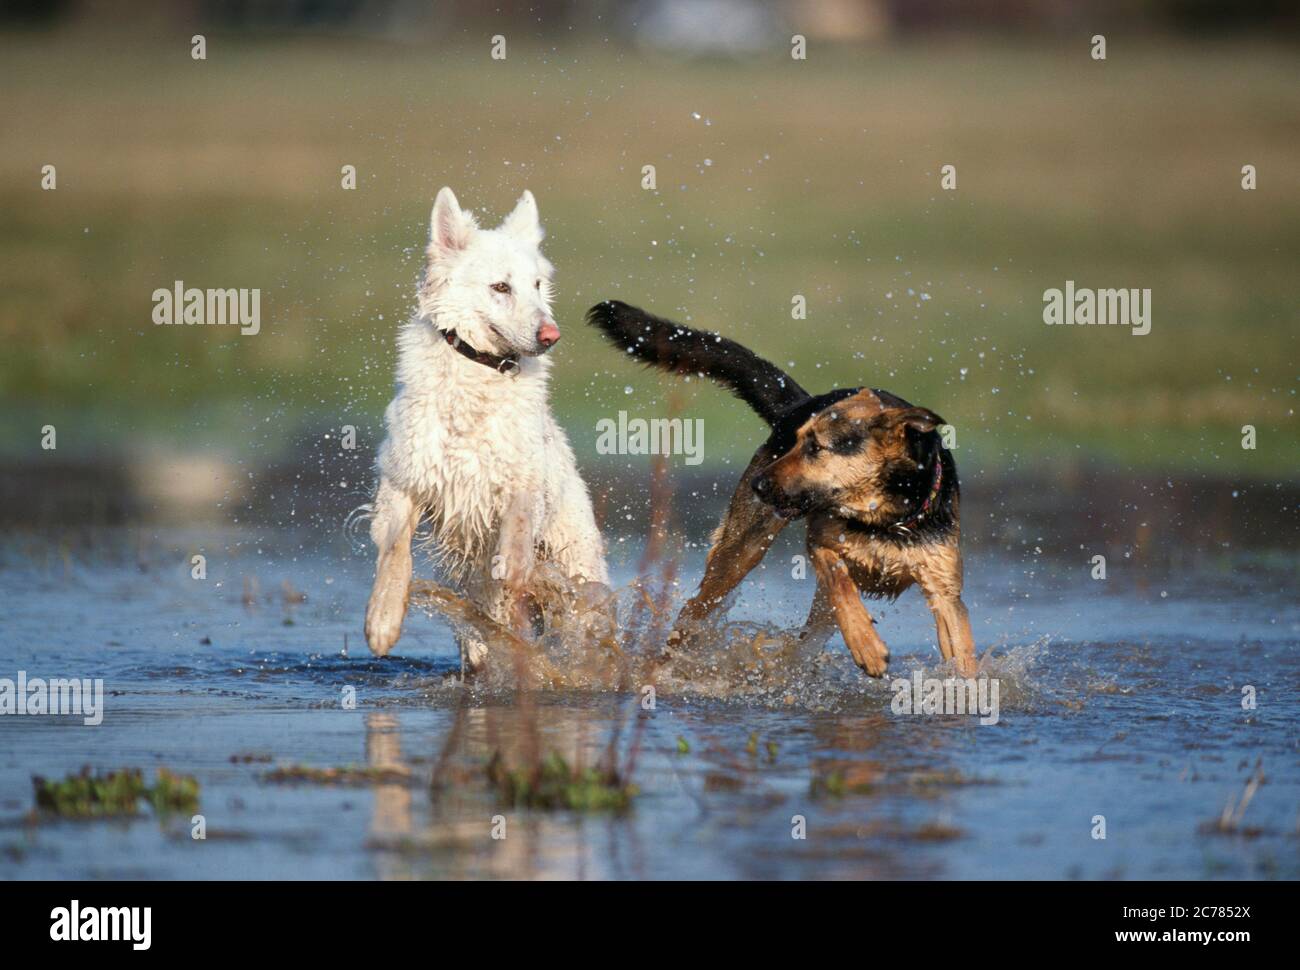 Berger blanc Suisse, Berger blanc suisse blanc et chien mixte. Deux chiens adultes jouant dans l'eau. Allemagne Banque D'Images